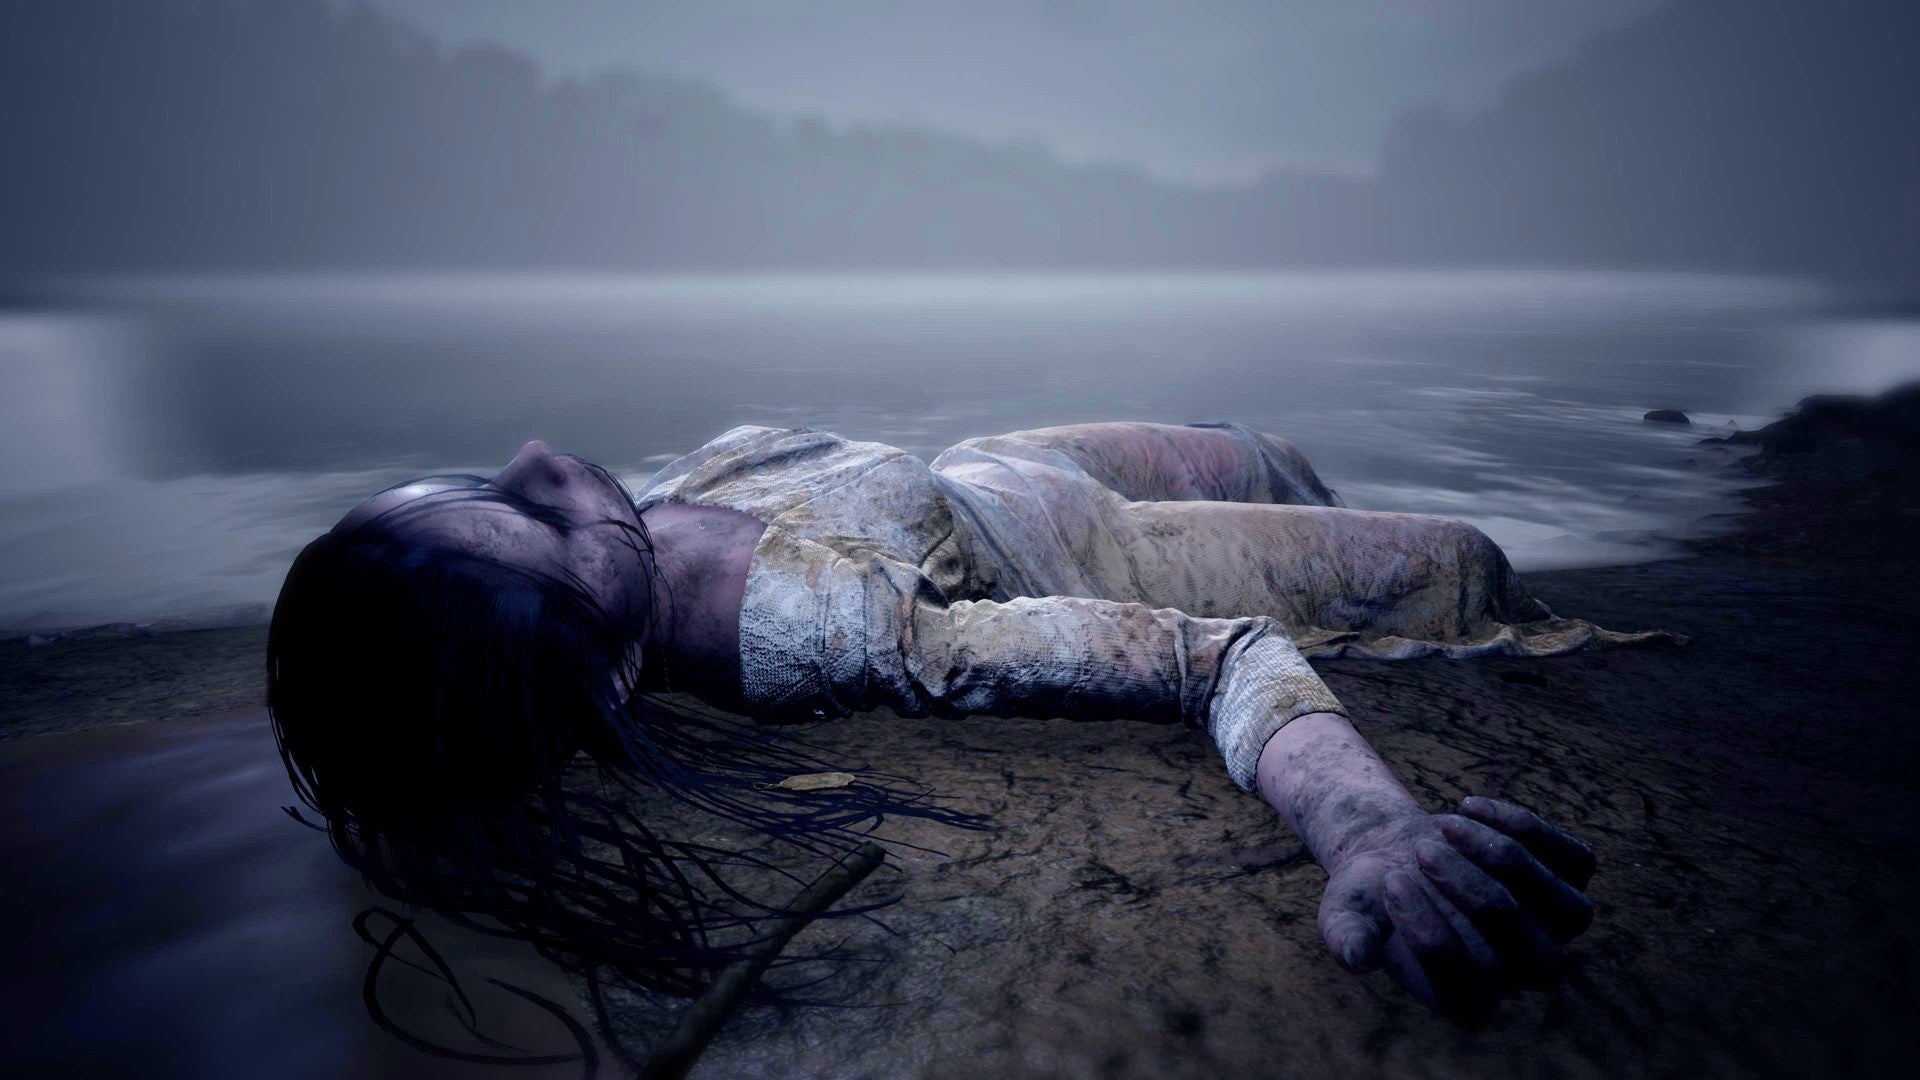 Скриншот из игры Martha is Dead, показывающий безжизненное тело на берегу озера